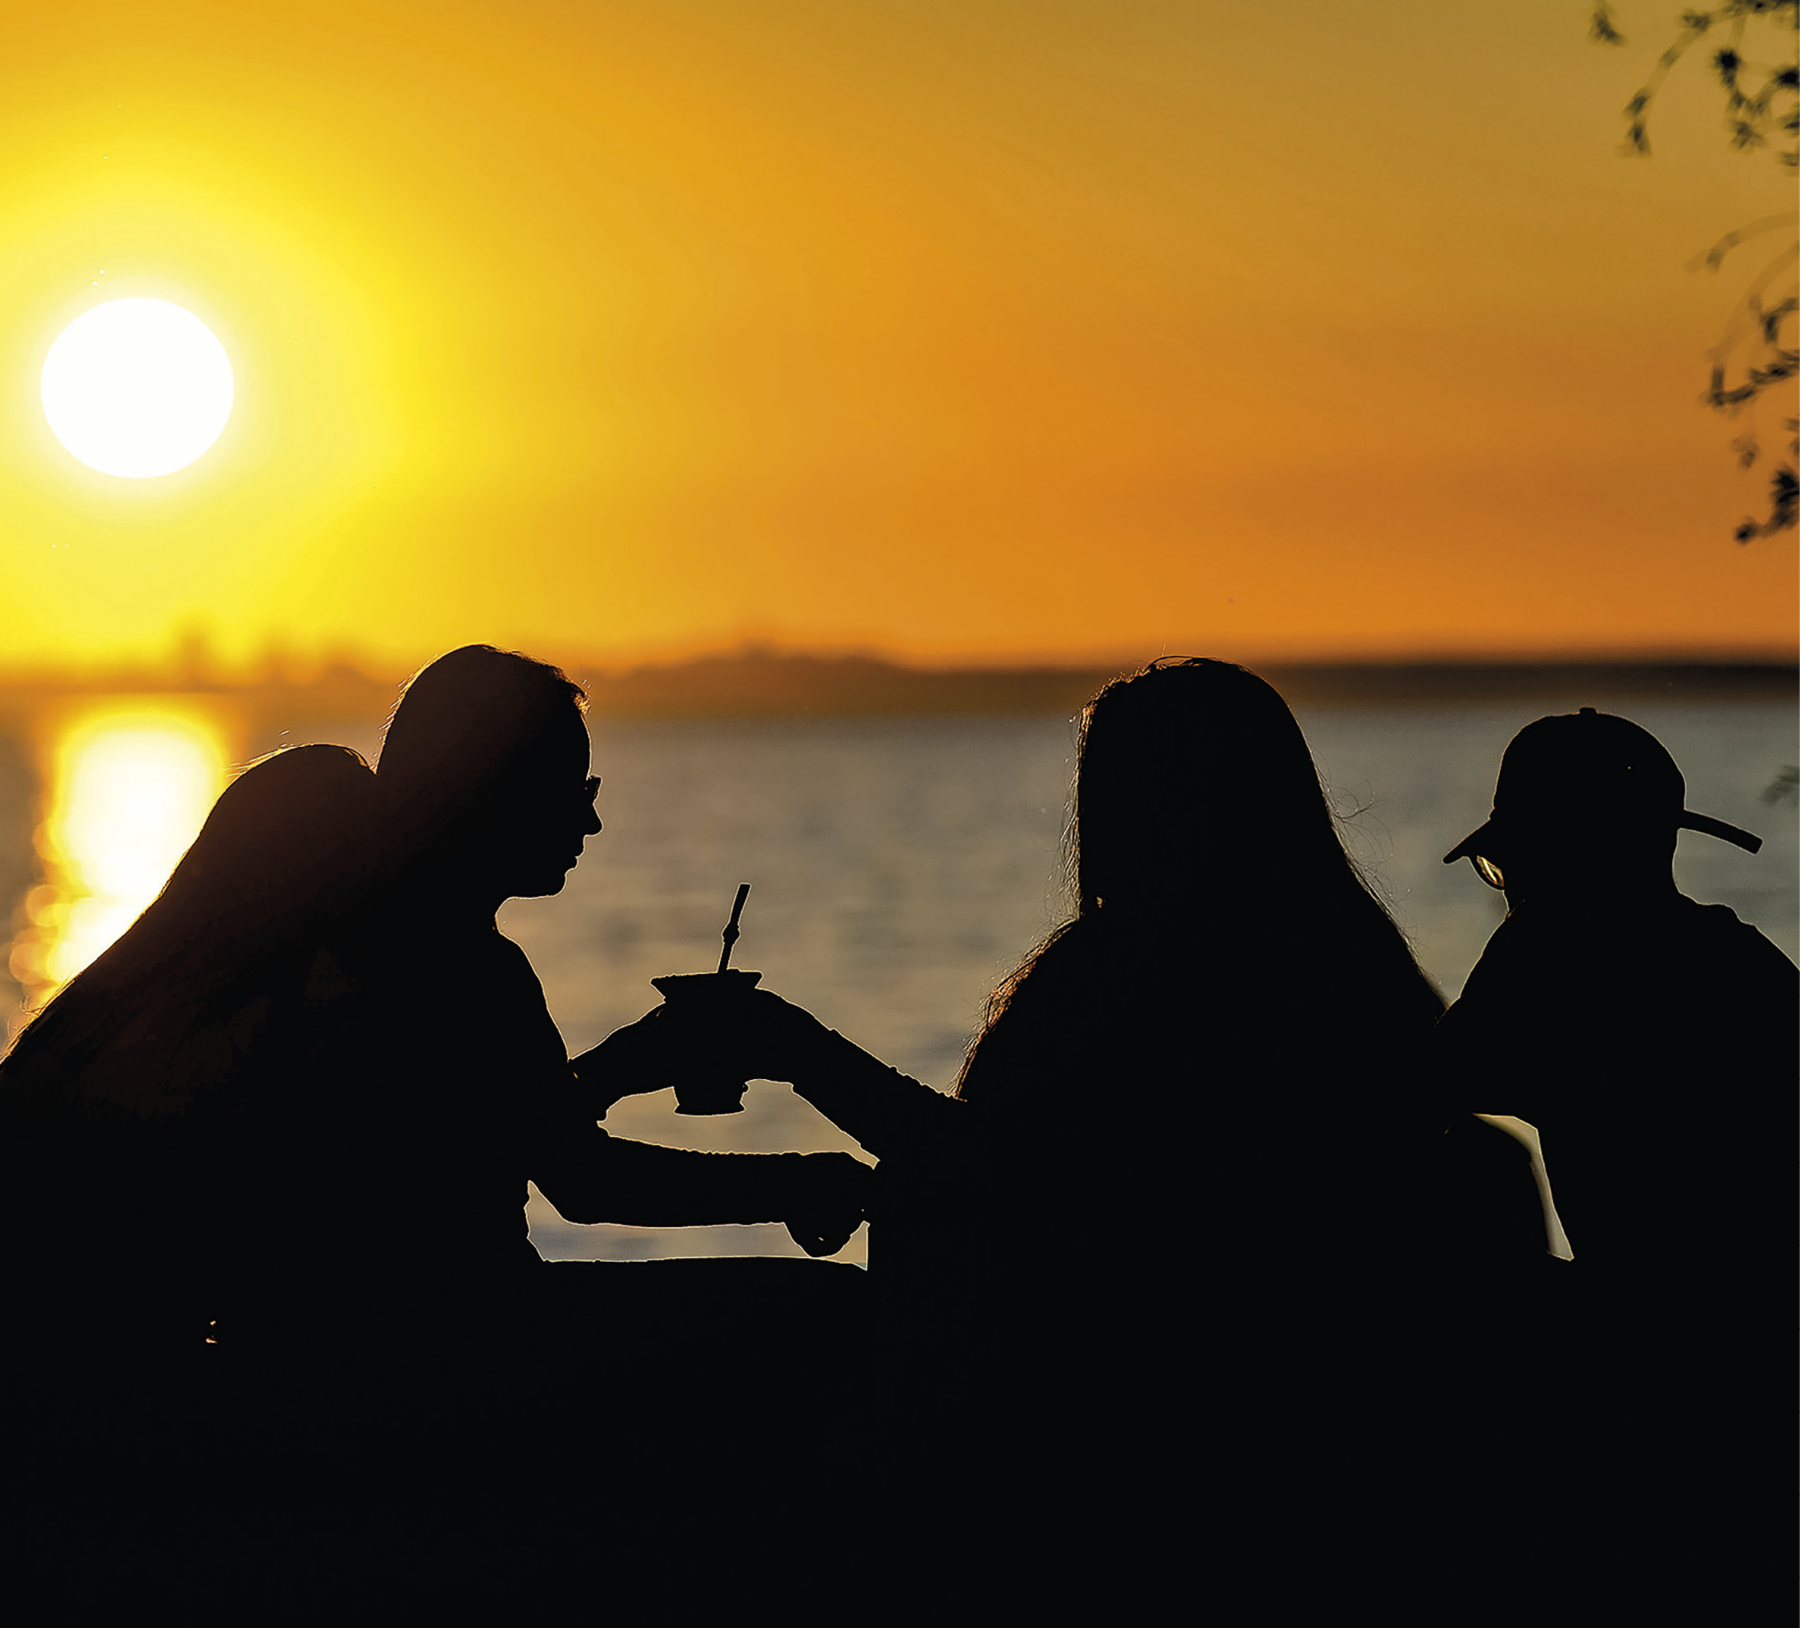 Fotografia. No primeiro plano, silhueta de quatro pessoas sentadas e duas delas seguram um chimarrão. Ao fundo, sol e pôr-do-sol refletido em uma grande porção de água.